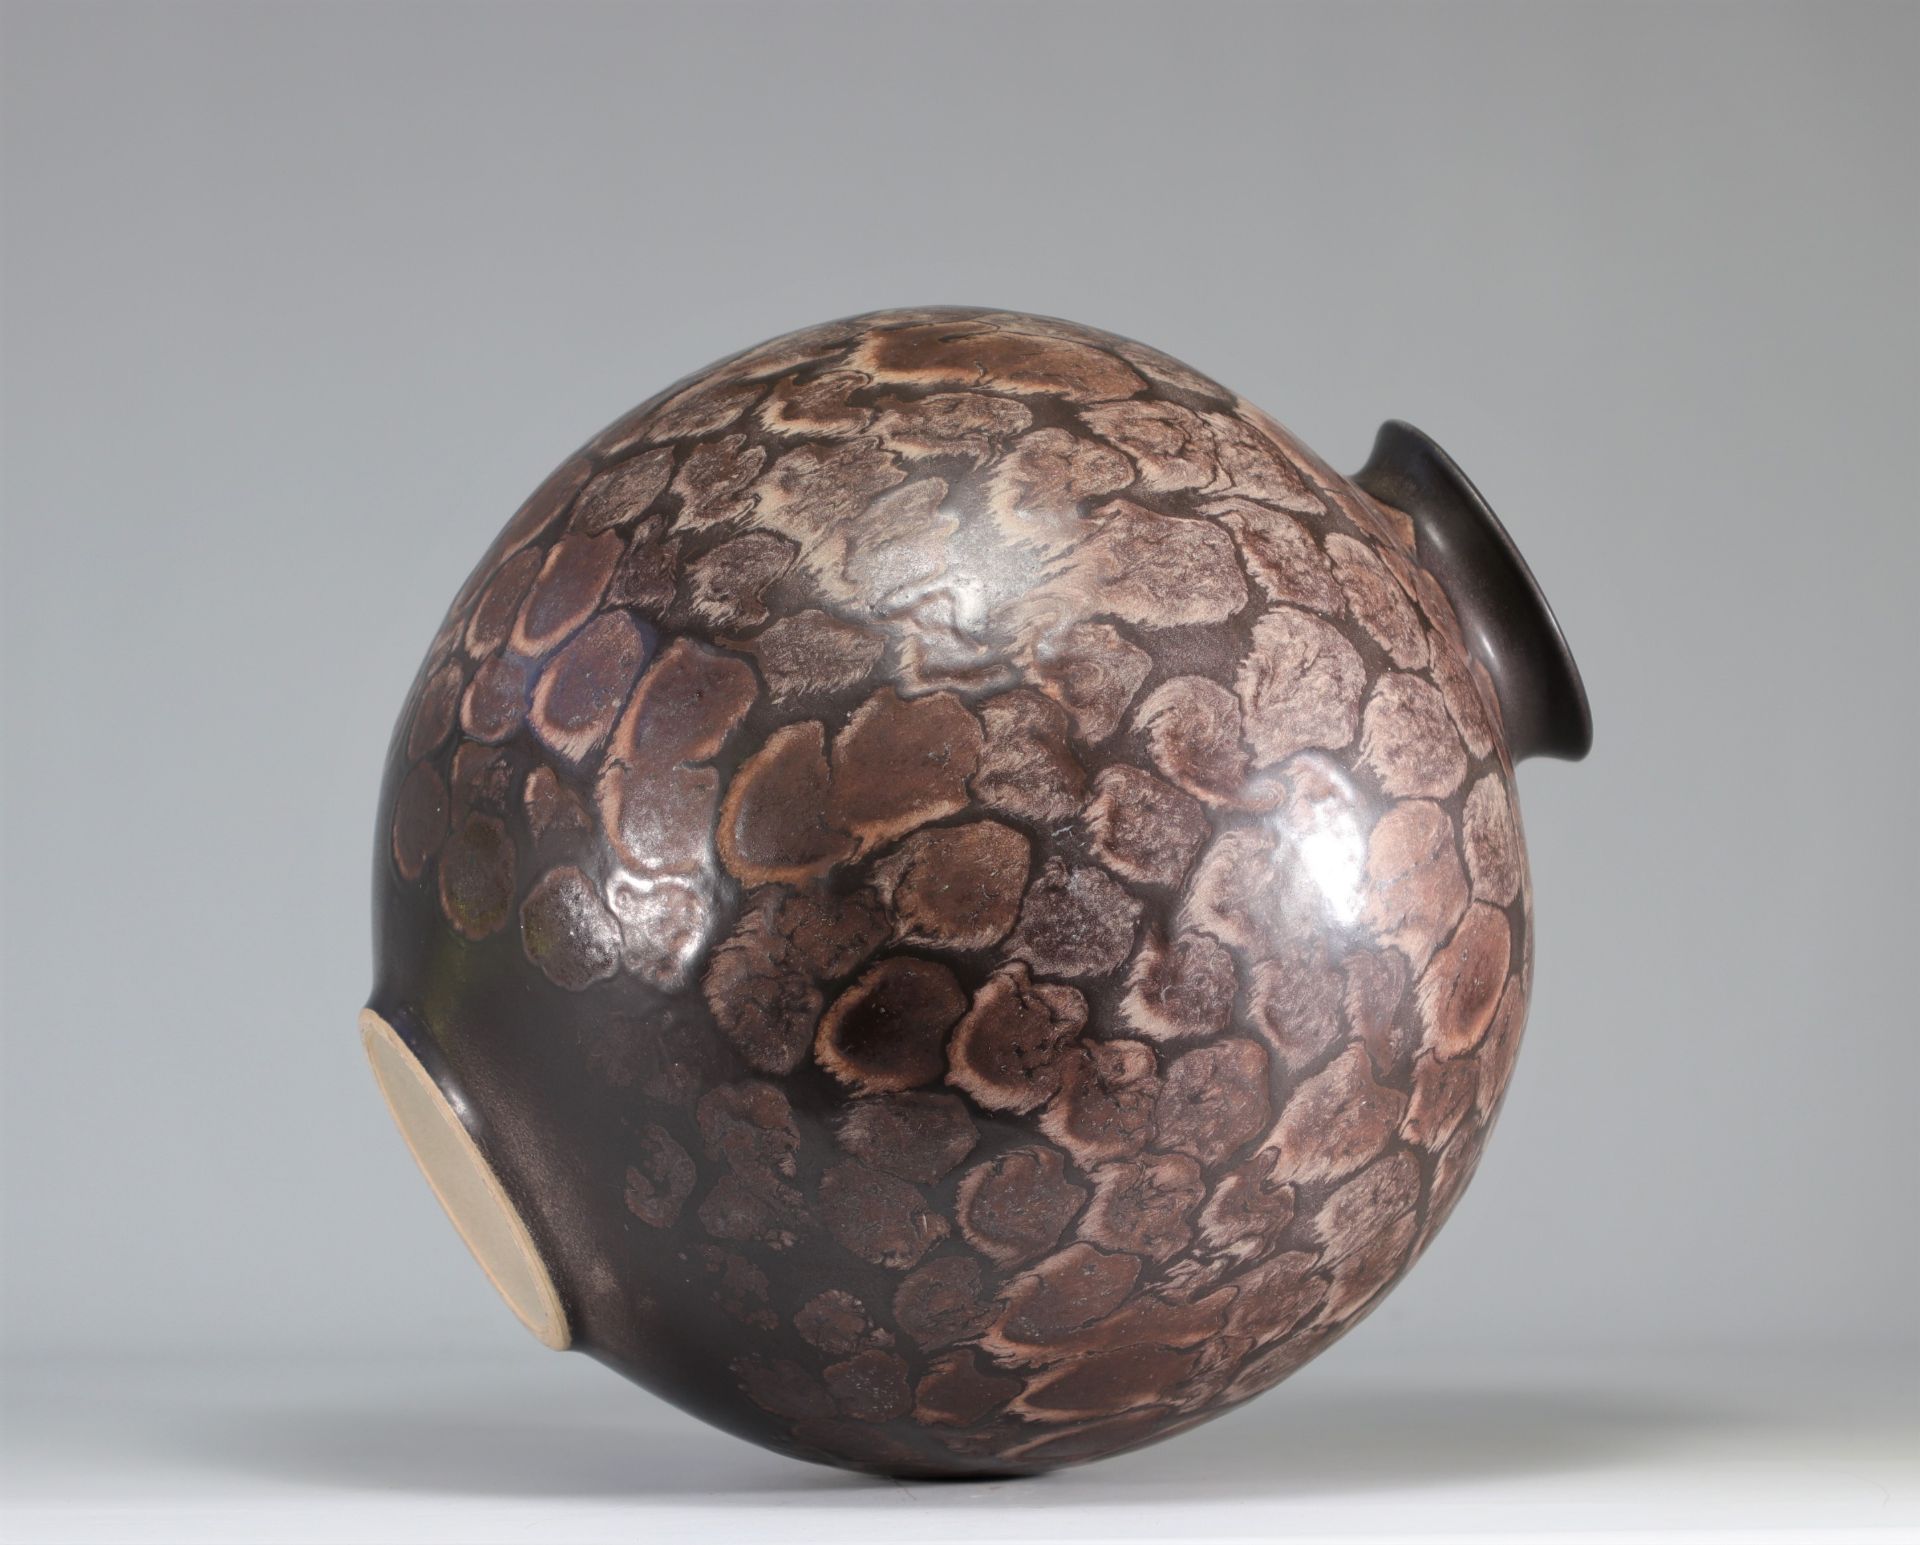 Imposant vase ceramique Allemande - Bild 2 aus 4